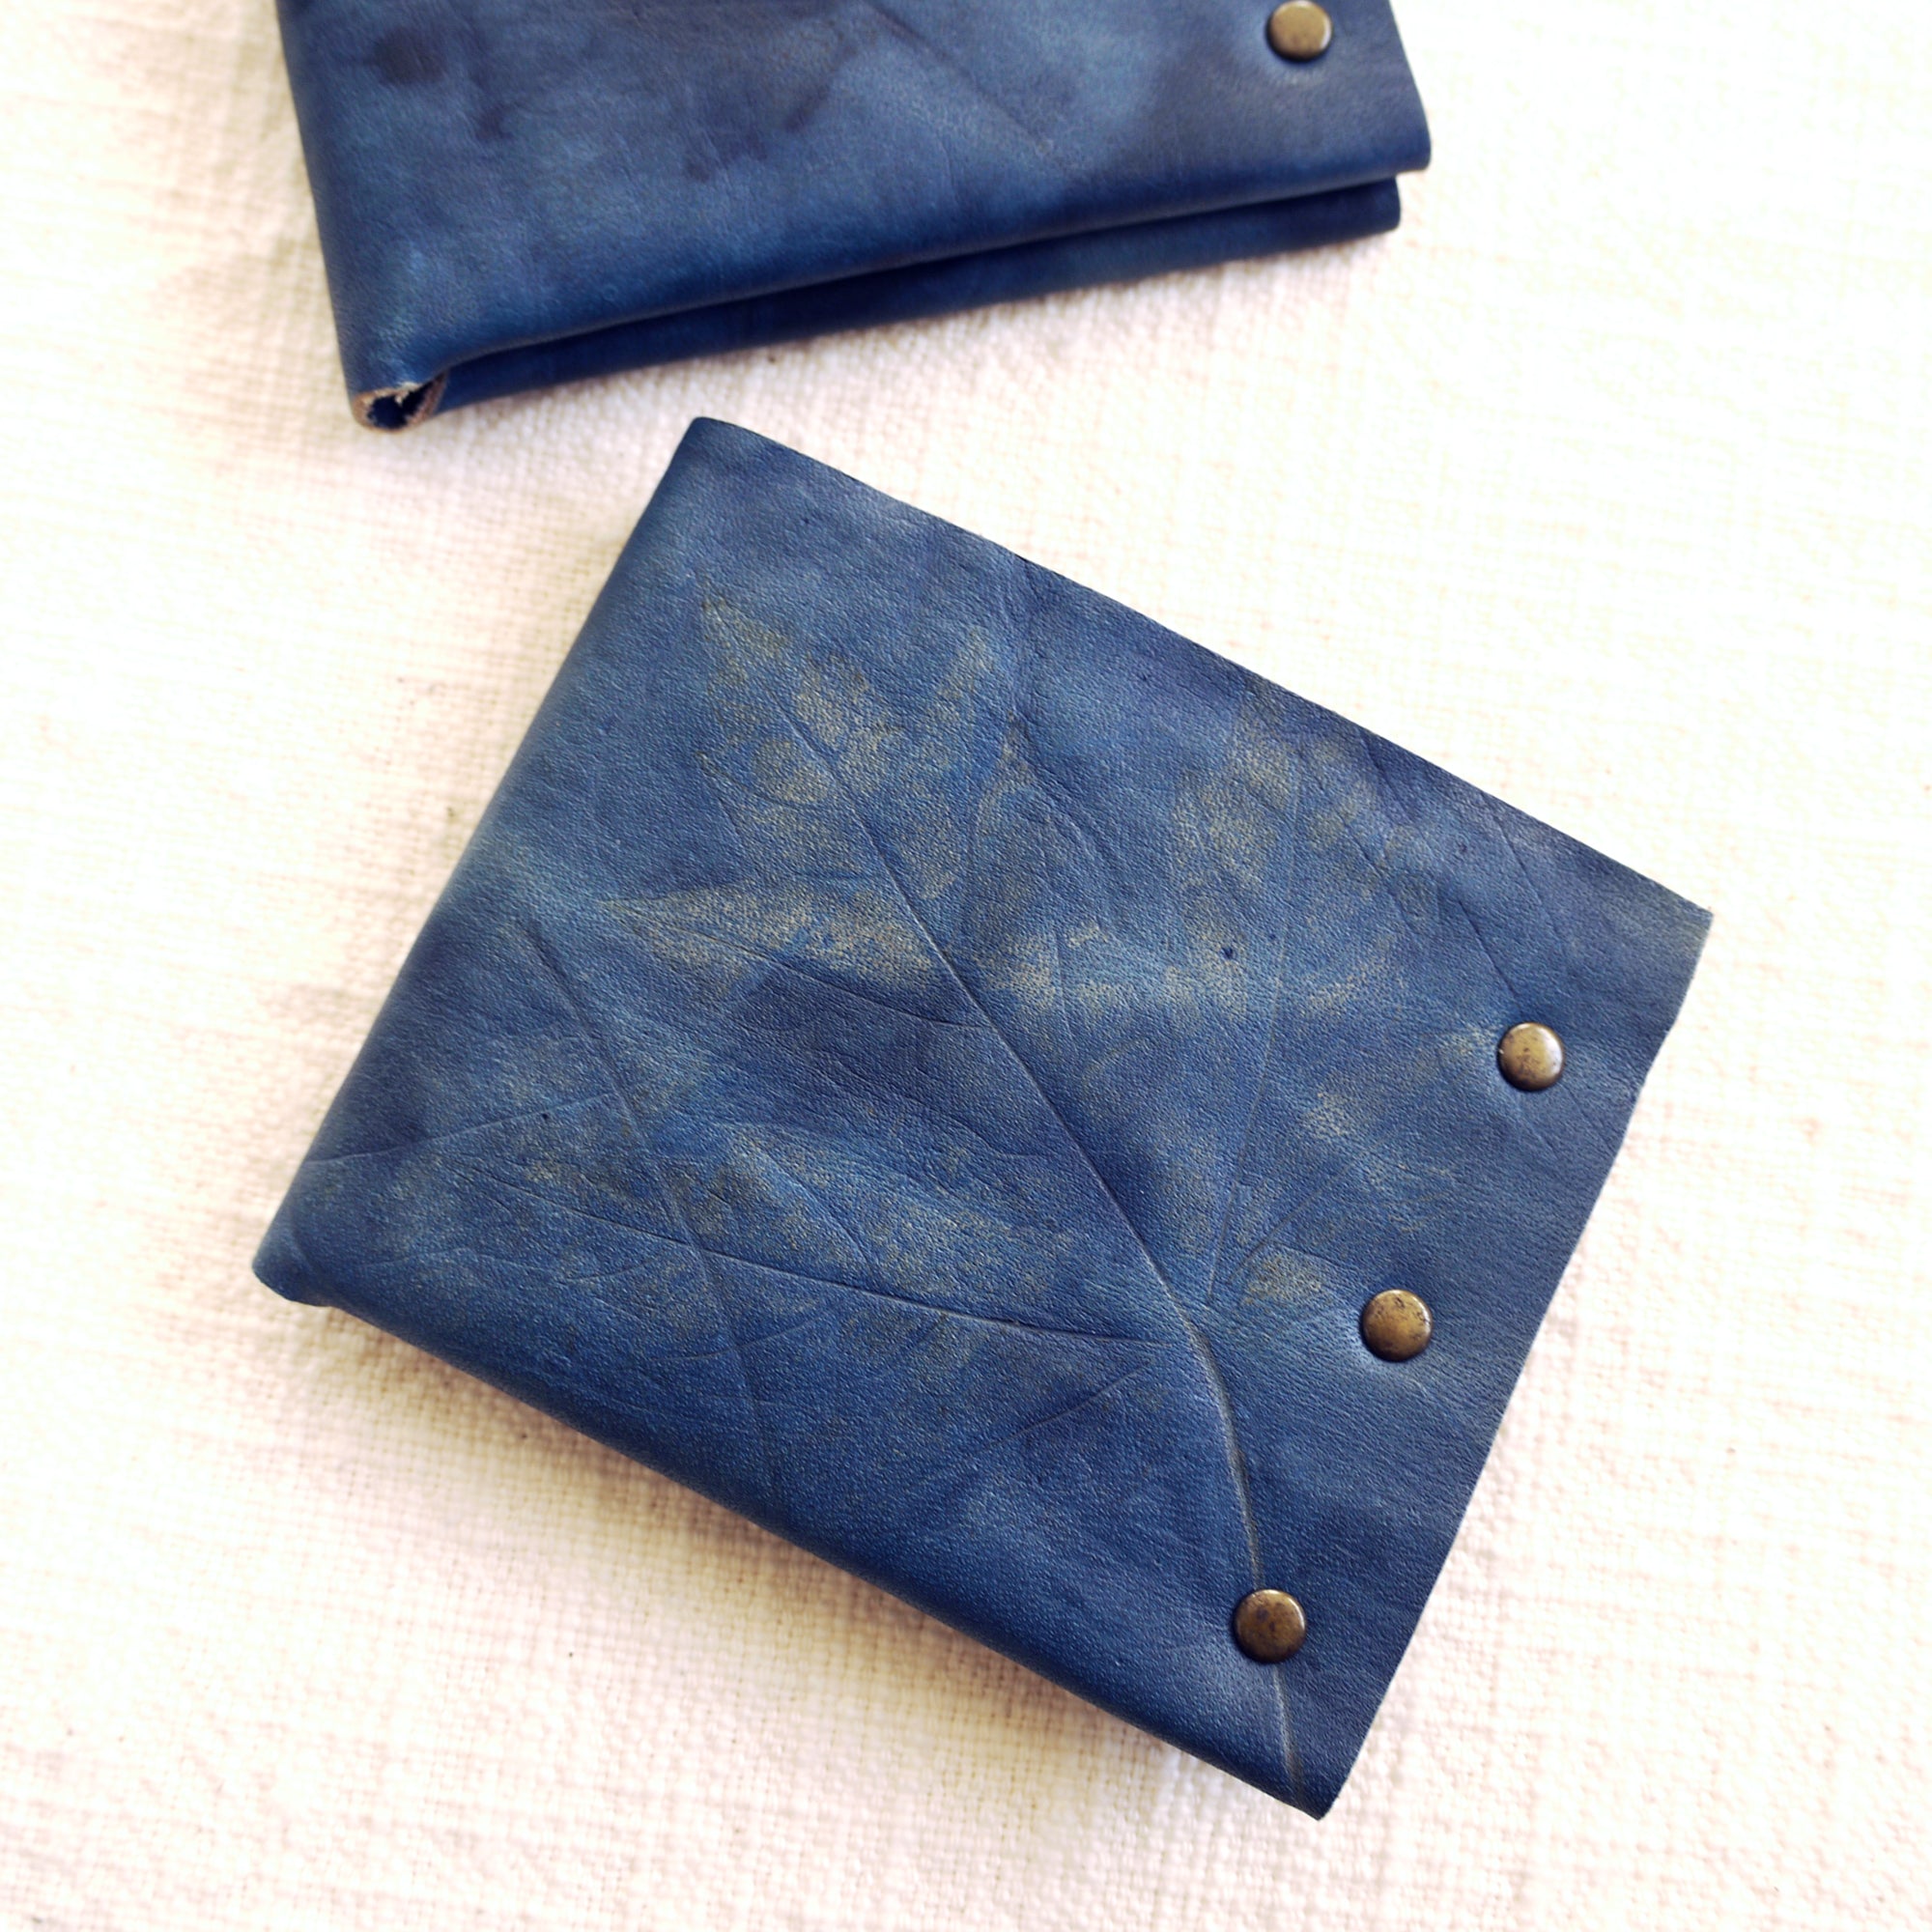 Indigo Leather Billfold Wallet